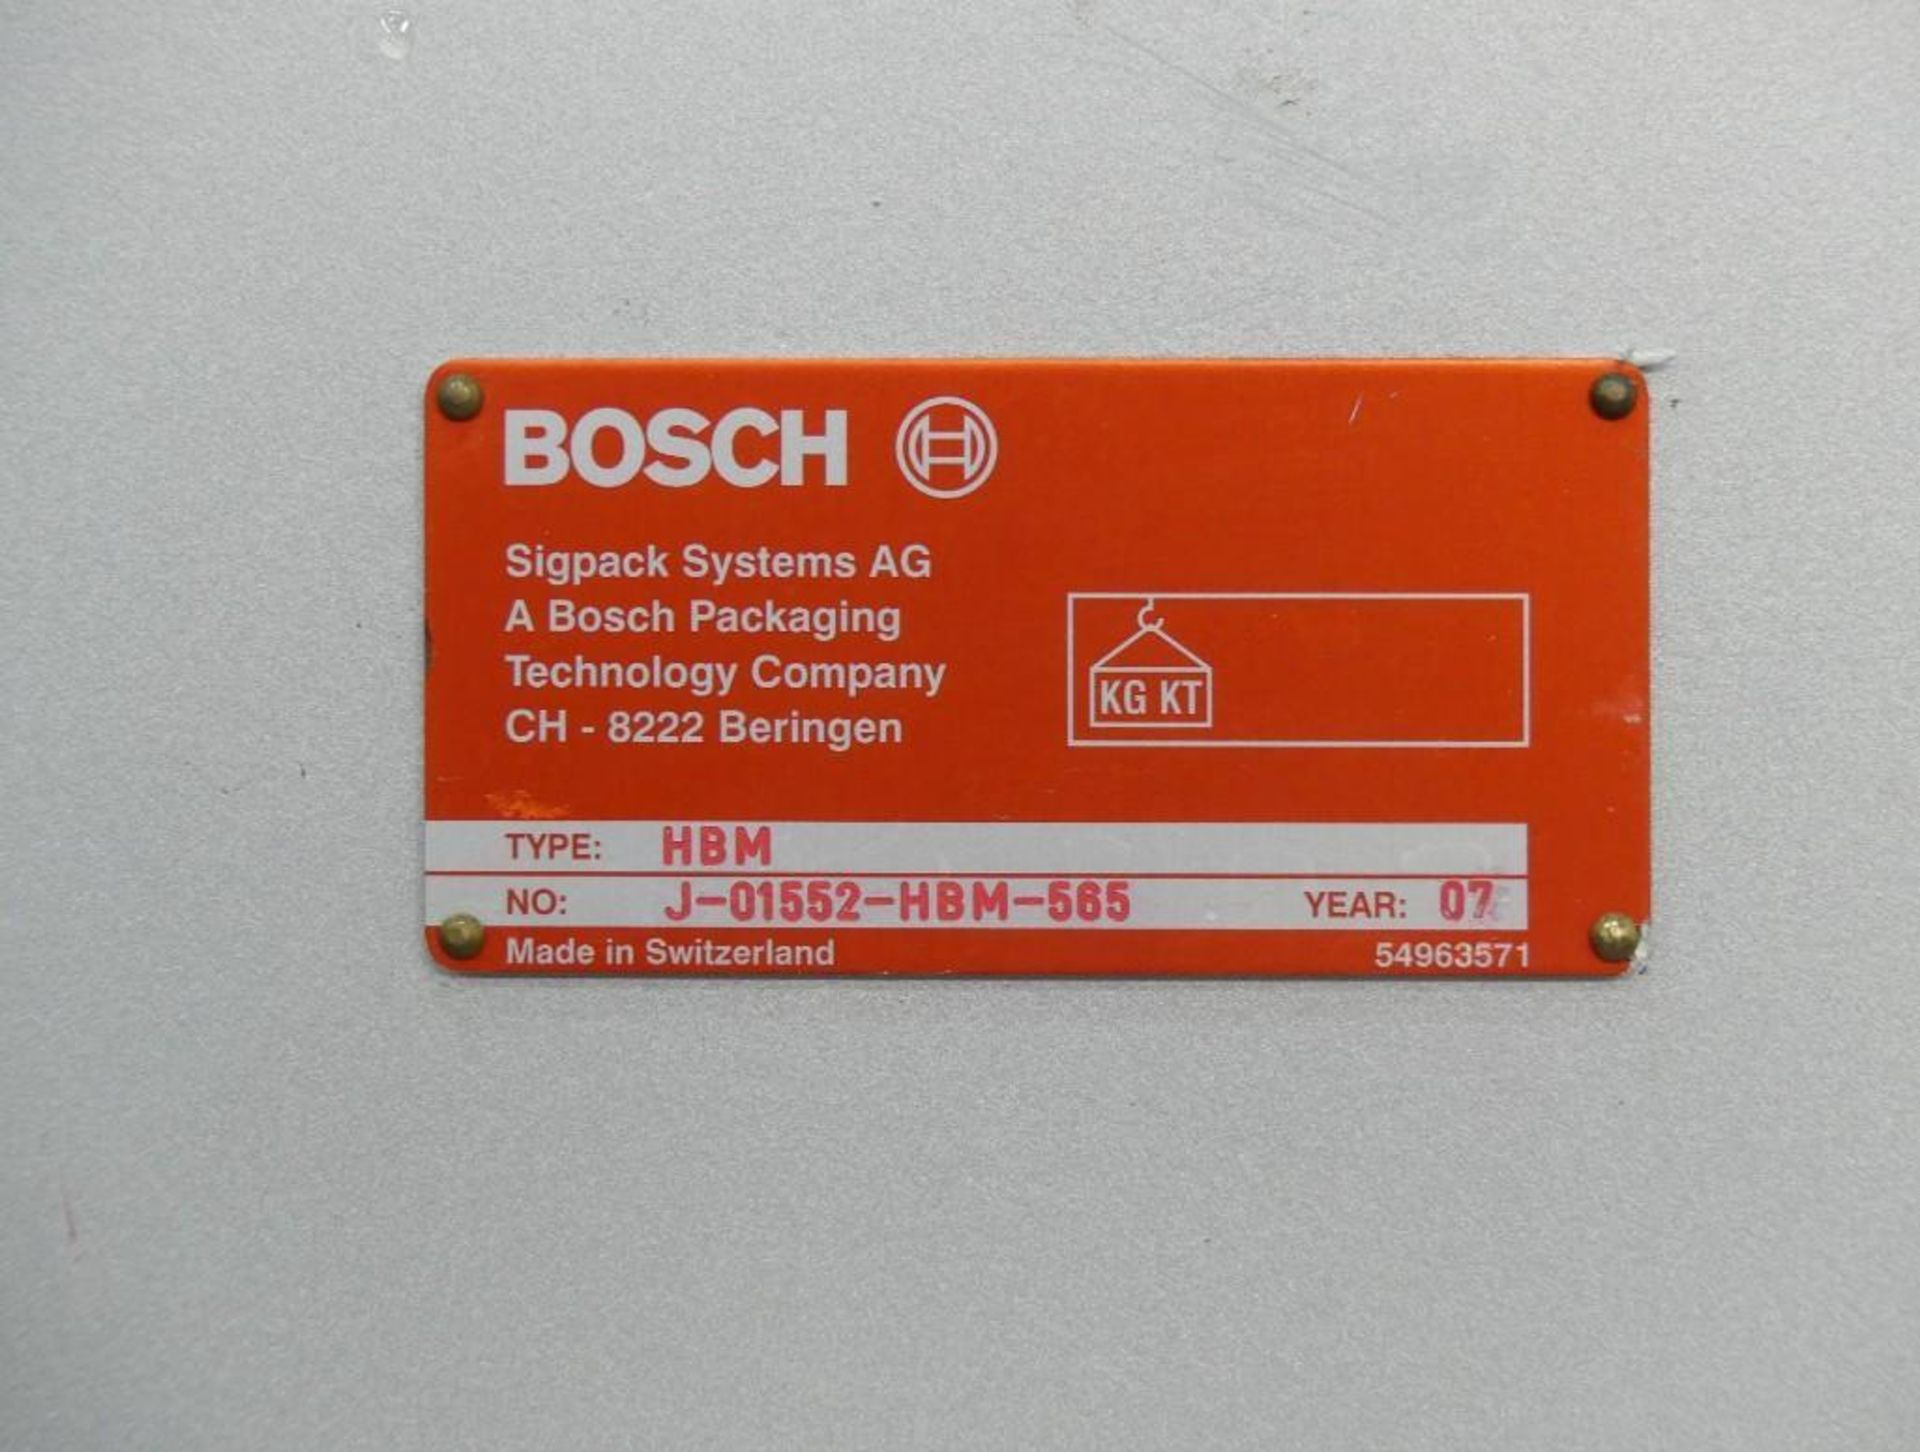 Bosch Sigpack HBM Flow Wrapper Print Registered - Image 20 of 27